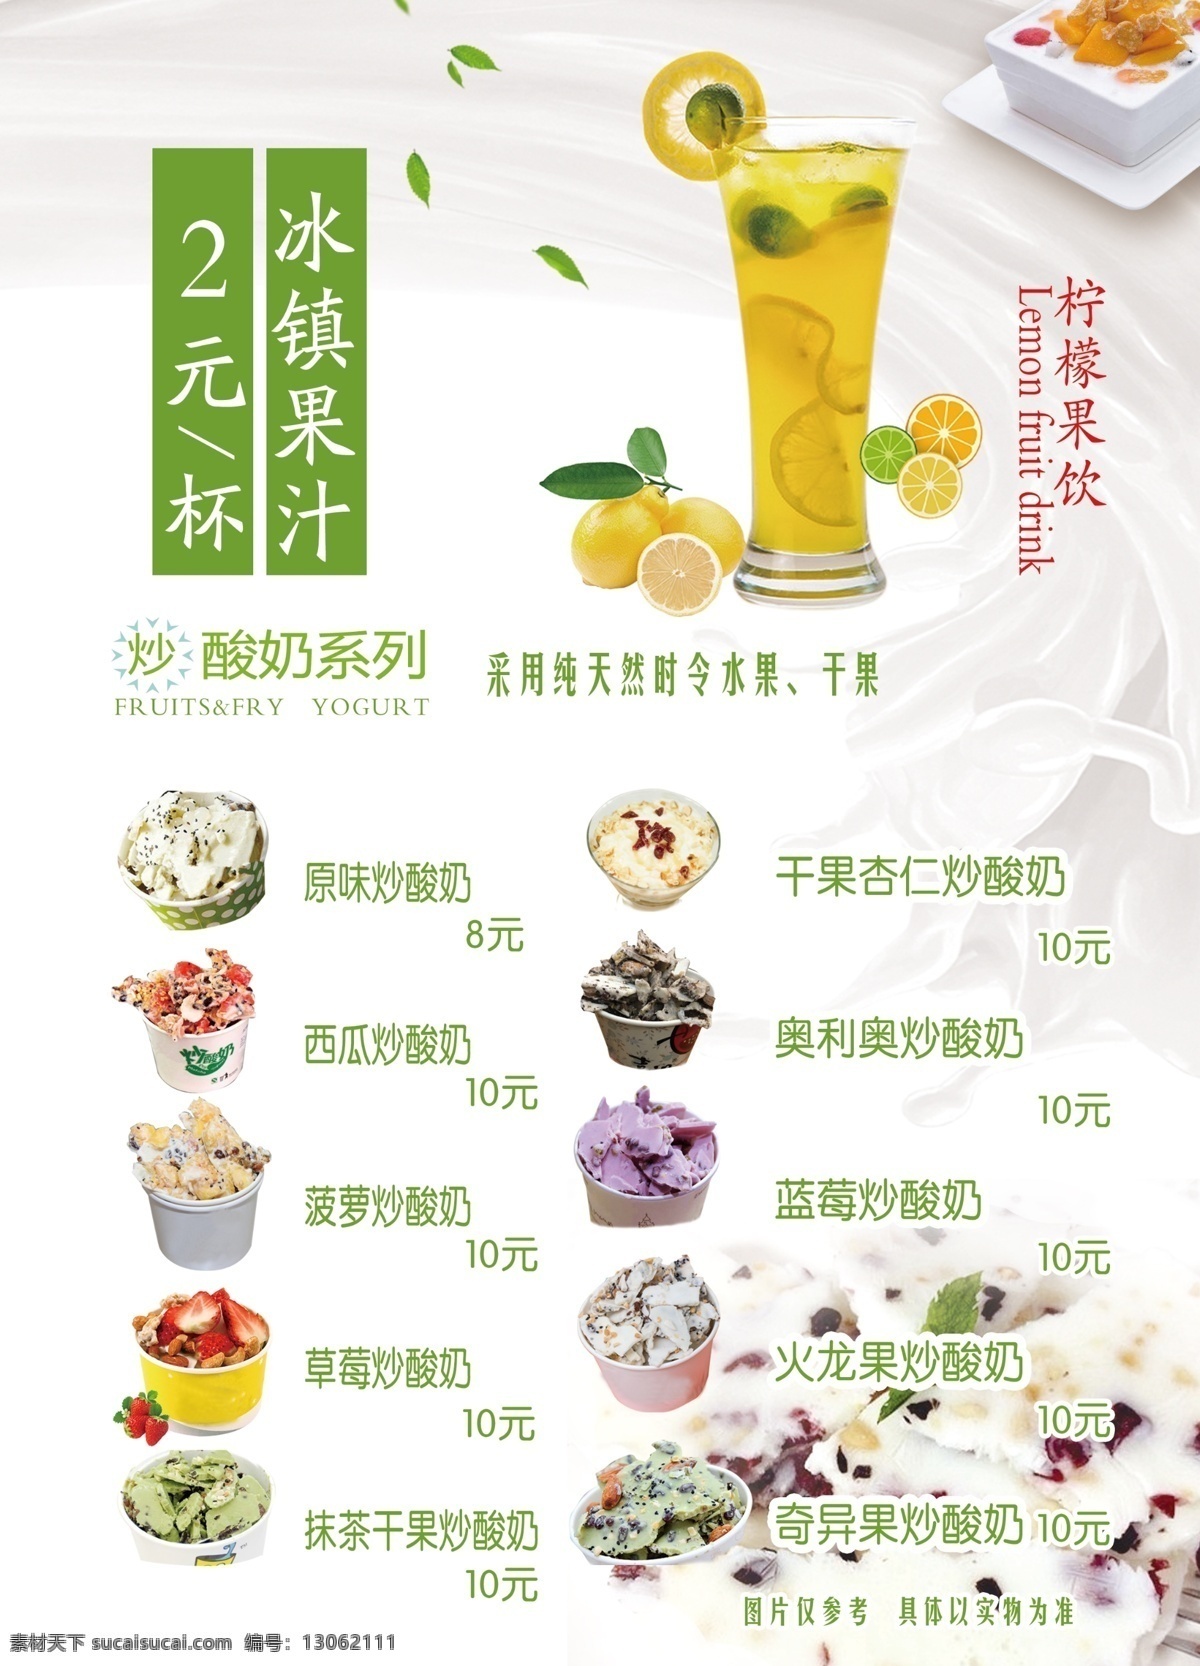 炒酸奶 灯箱片 果汁 价格表 海报 写真 饮料 文化艺术 传统文化